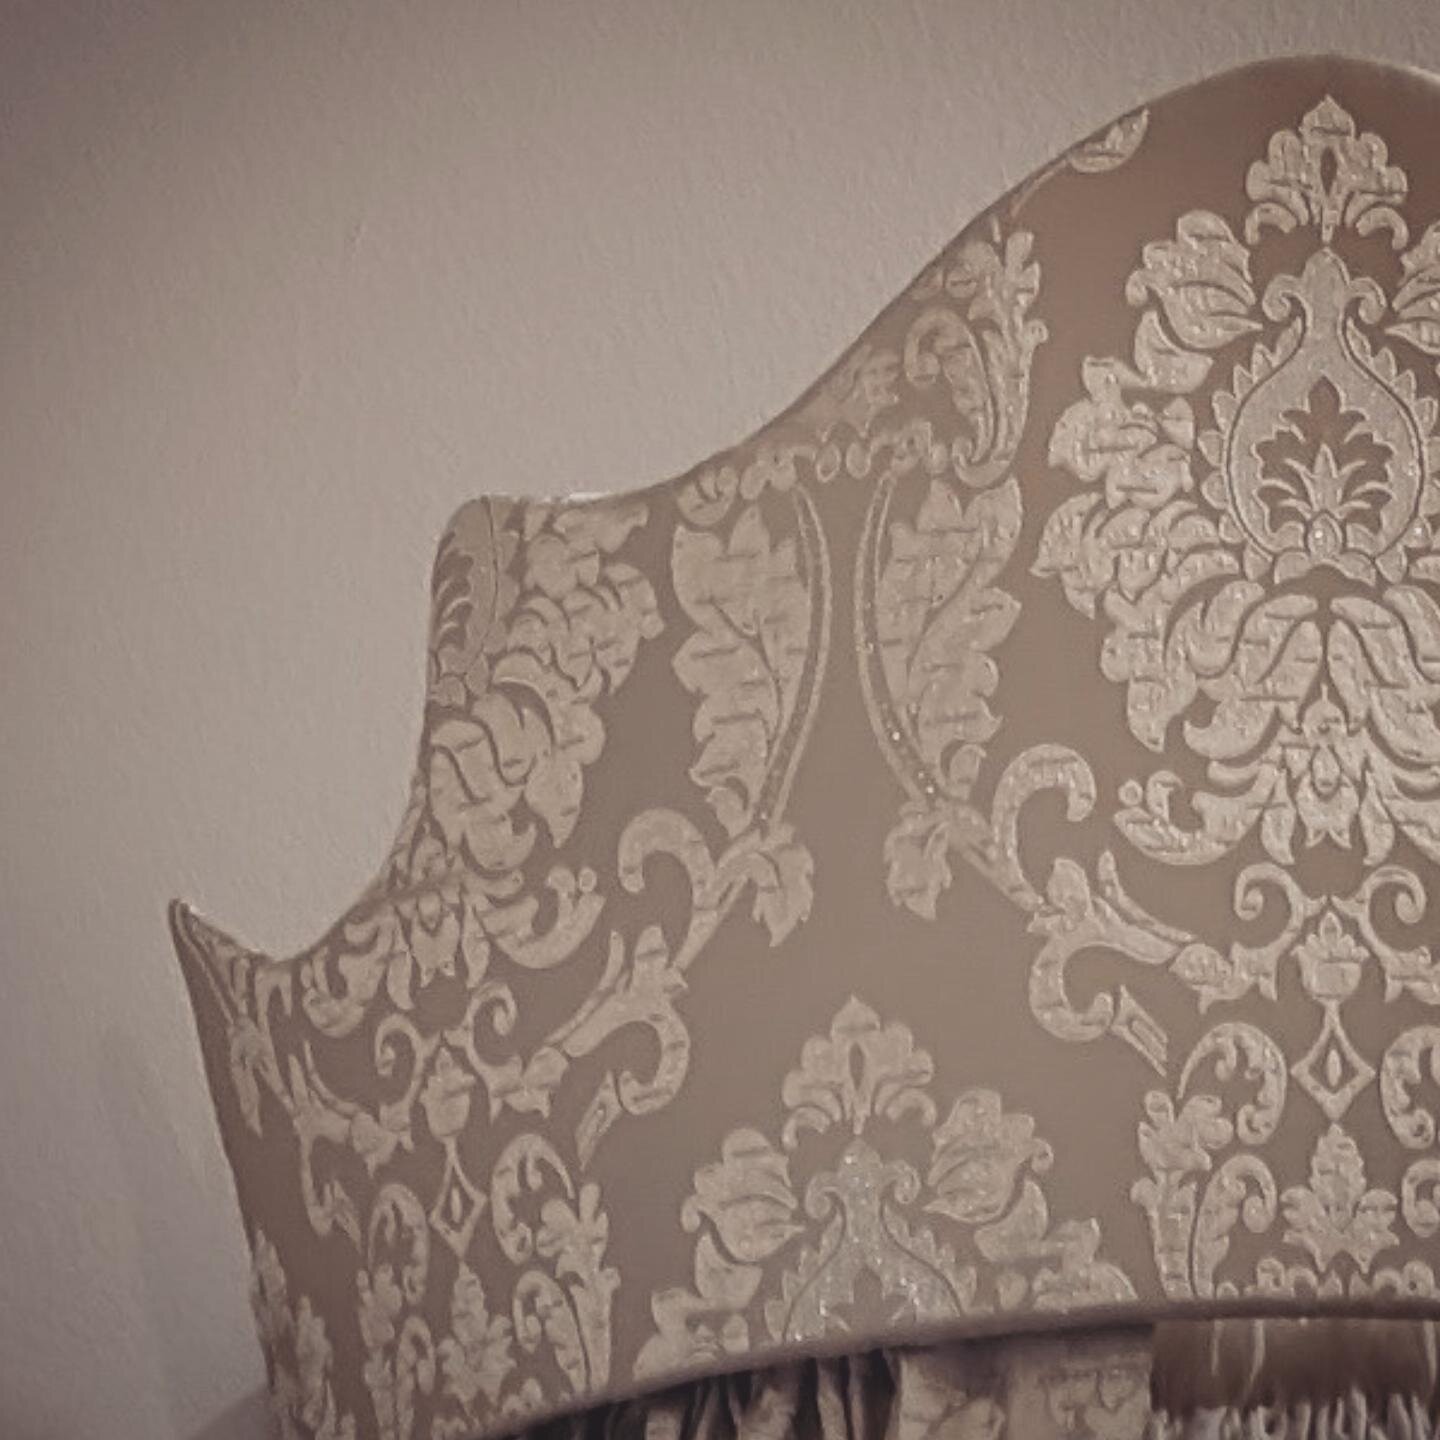 Details ✨

#damaskpattern 
#beautifulfabrics 
#renaissance